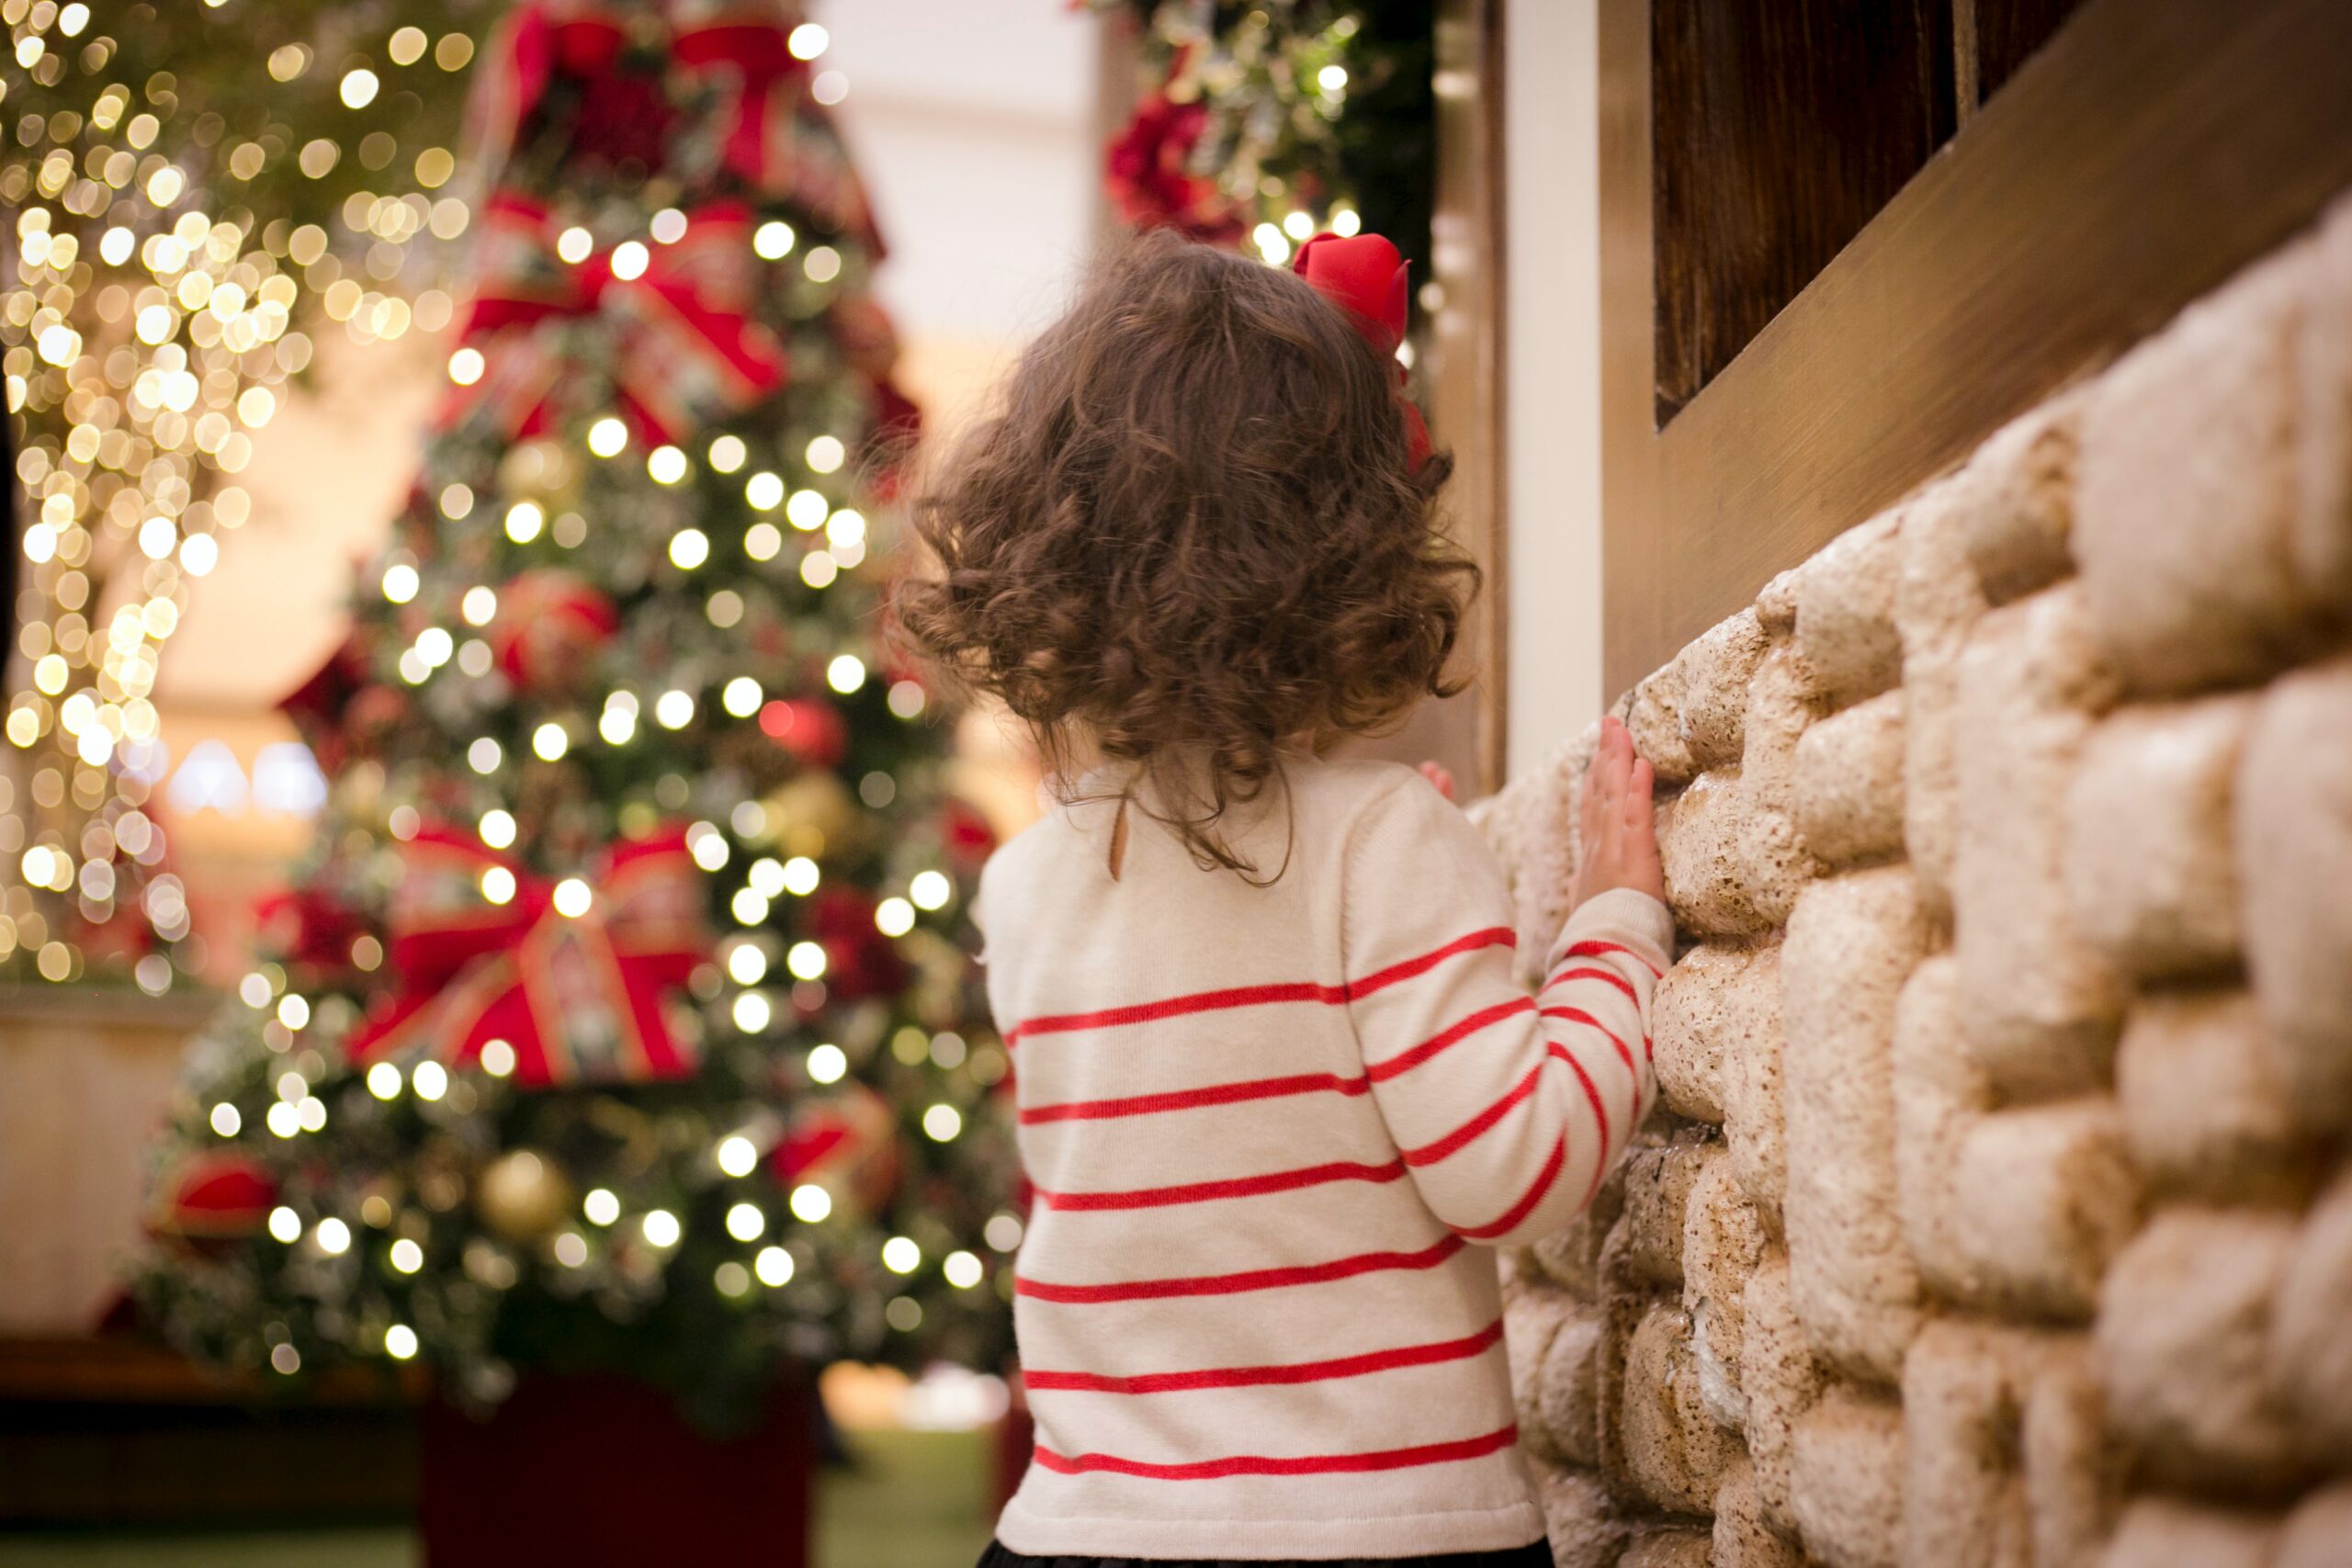 فرحة عيد الميلاد مستمرة لأطفال أوسنابروك رغم الإلغاءات